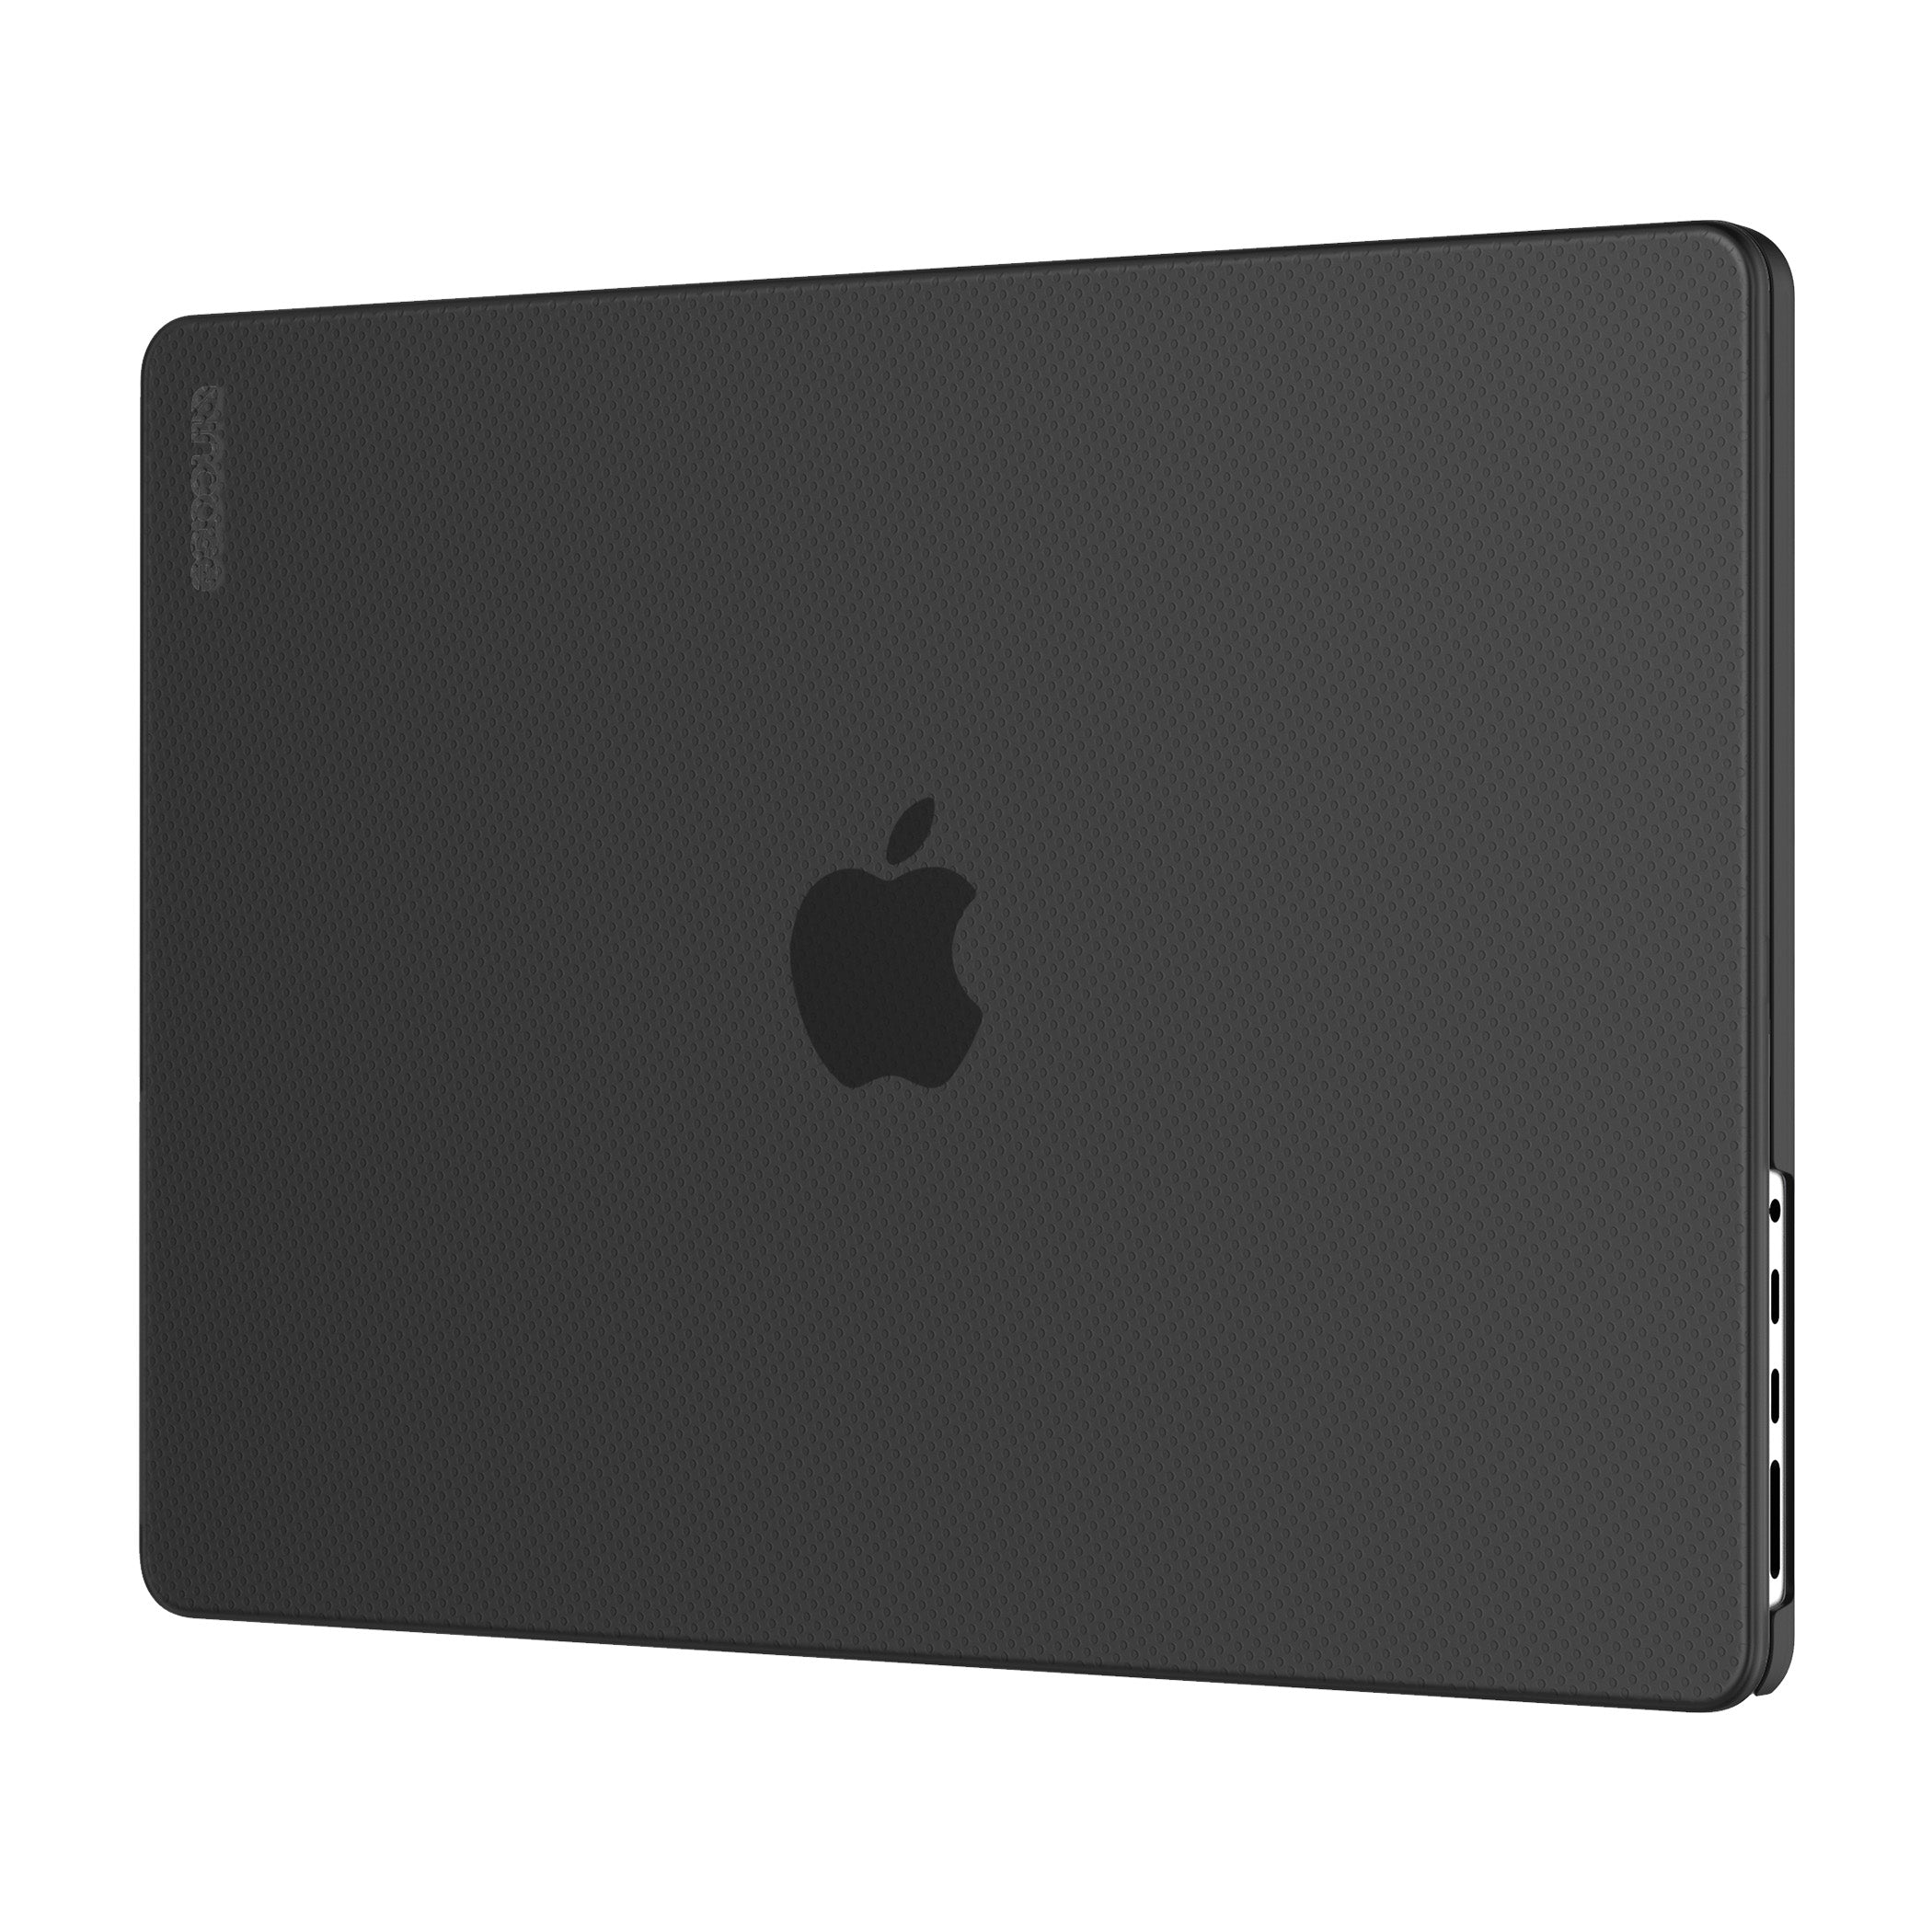 Coque MacBook Air 13 Transparent - Coquediscount